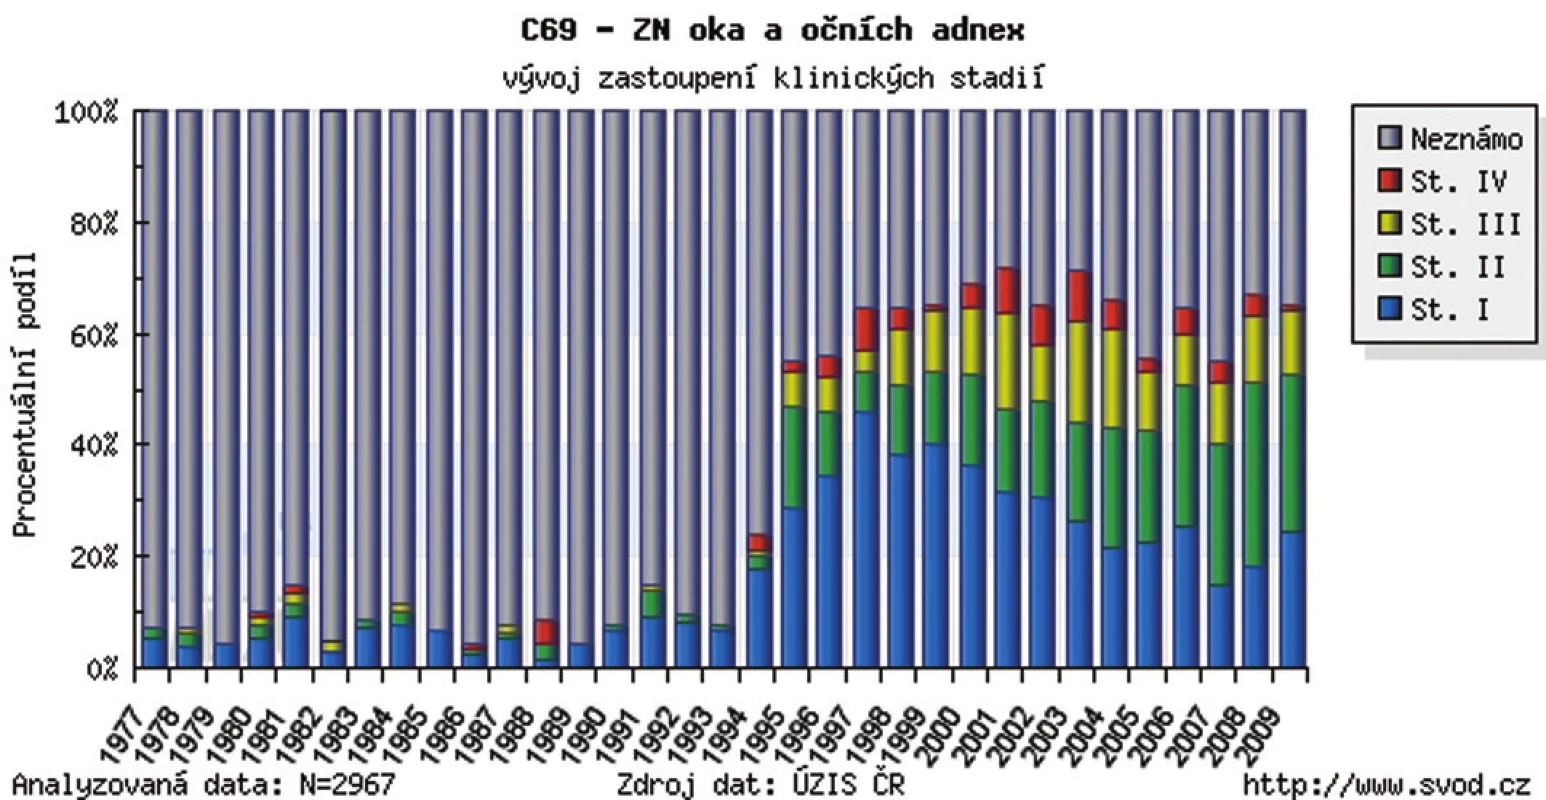 Zhubný nádor oka a adnex v ČR – vývoj zastúpenia podľa klinických štádií v r. 1977–2009